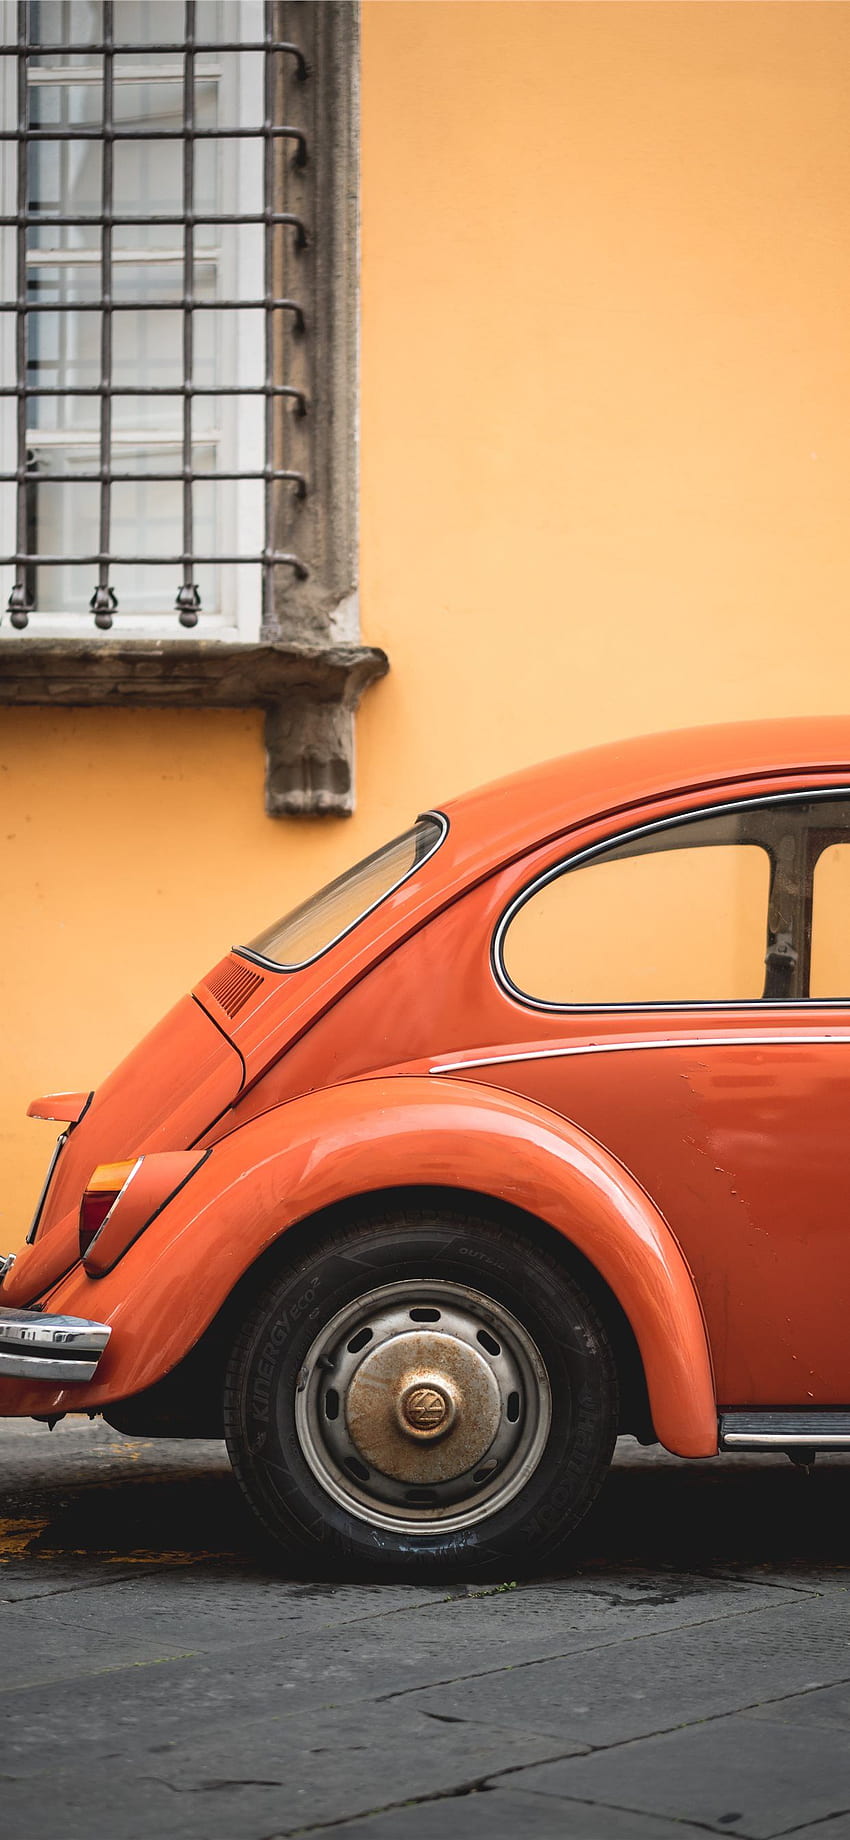 shallow focus of orange Volkswagen Beetle iPhone X, VW HD phone wallpaper